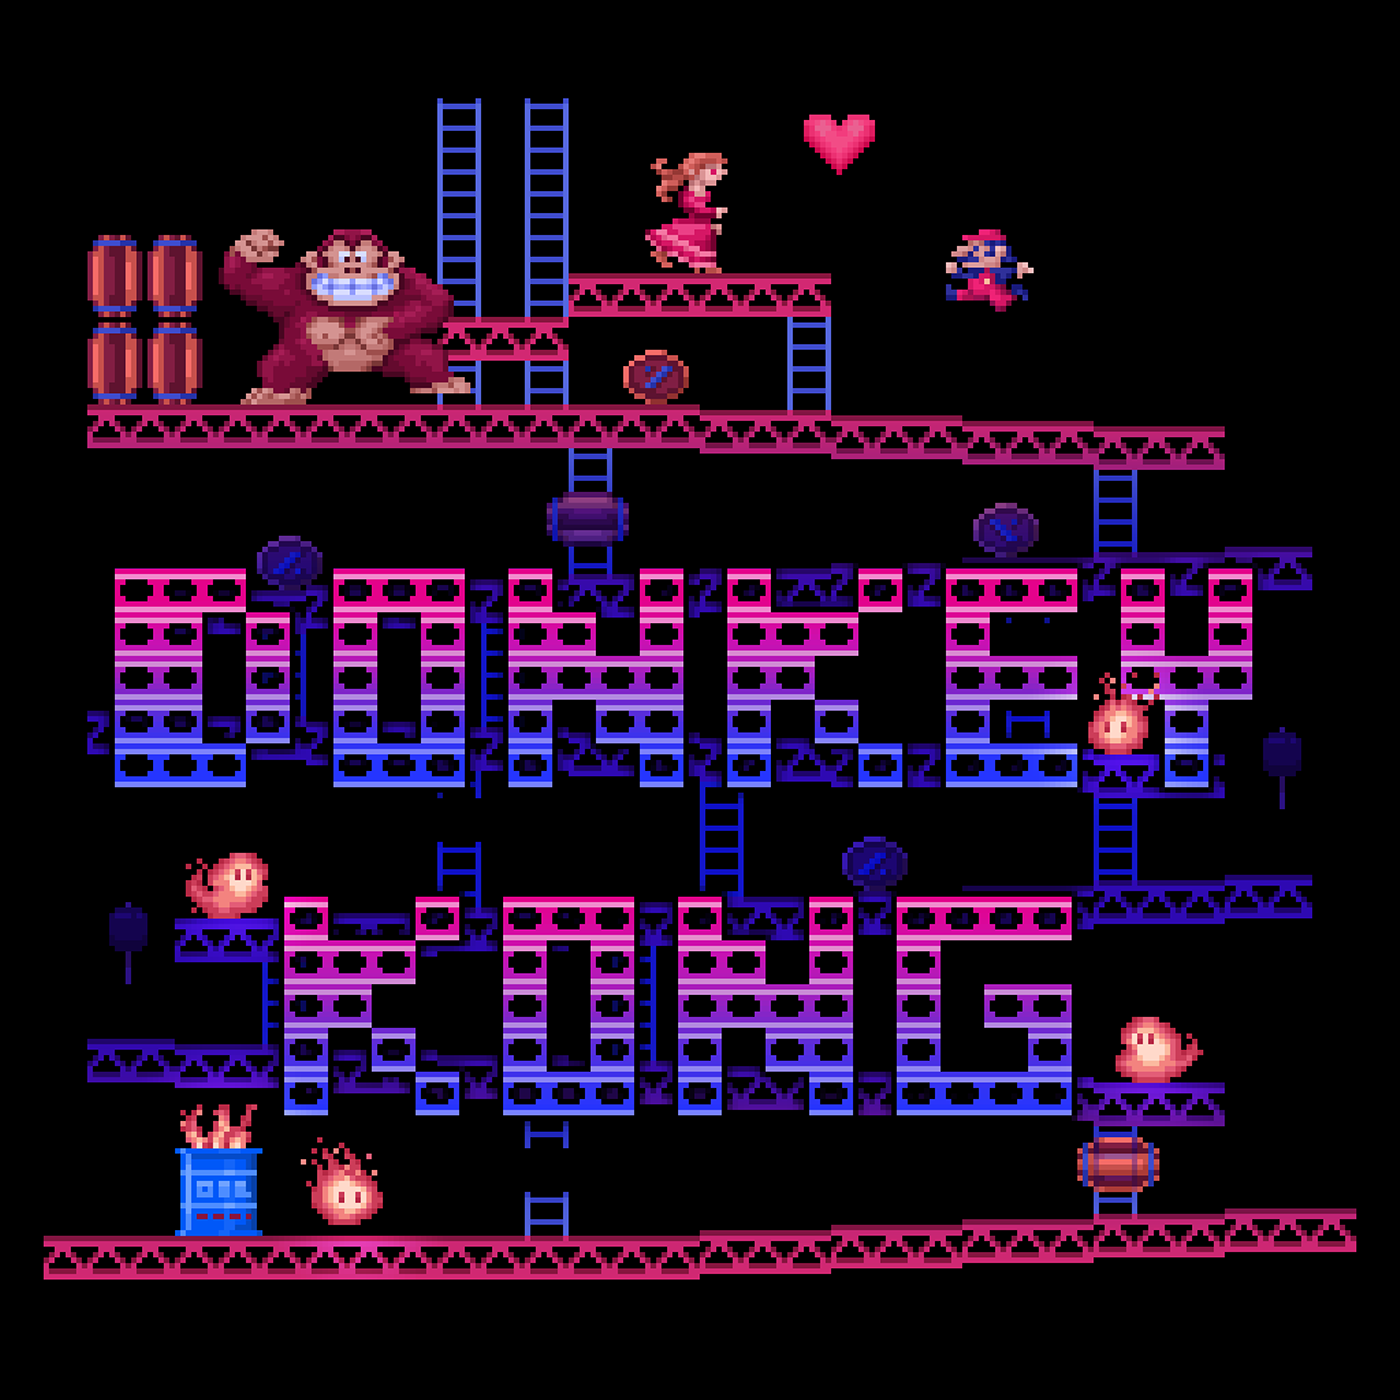 donkey kong Gaming retrogaming Pixel art pixelart Retro 8 bit 8bit Video Games